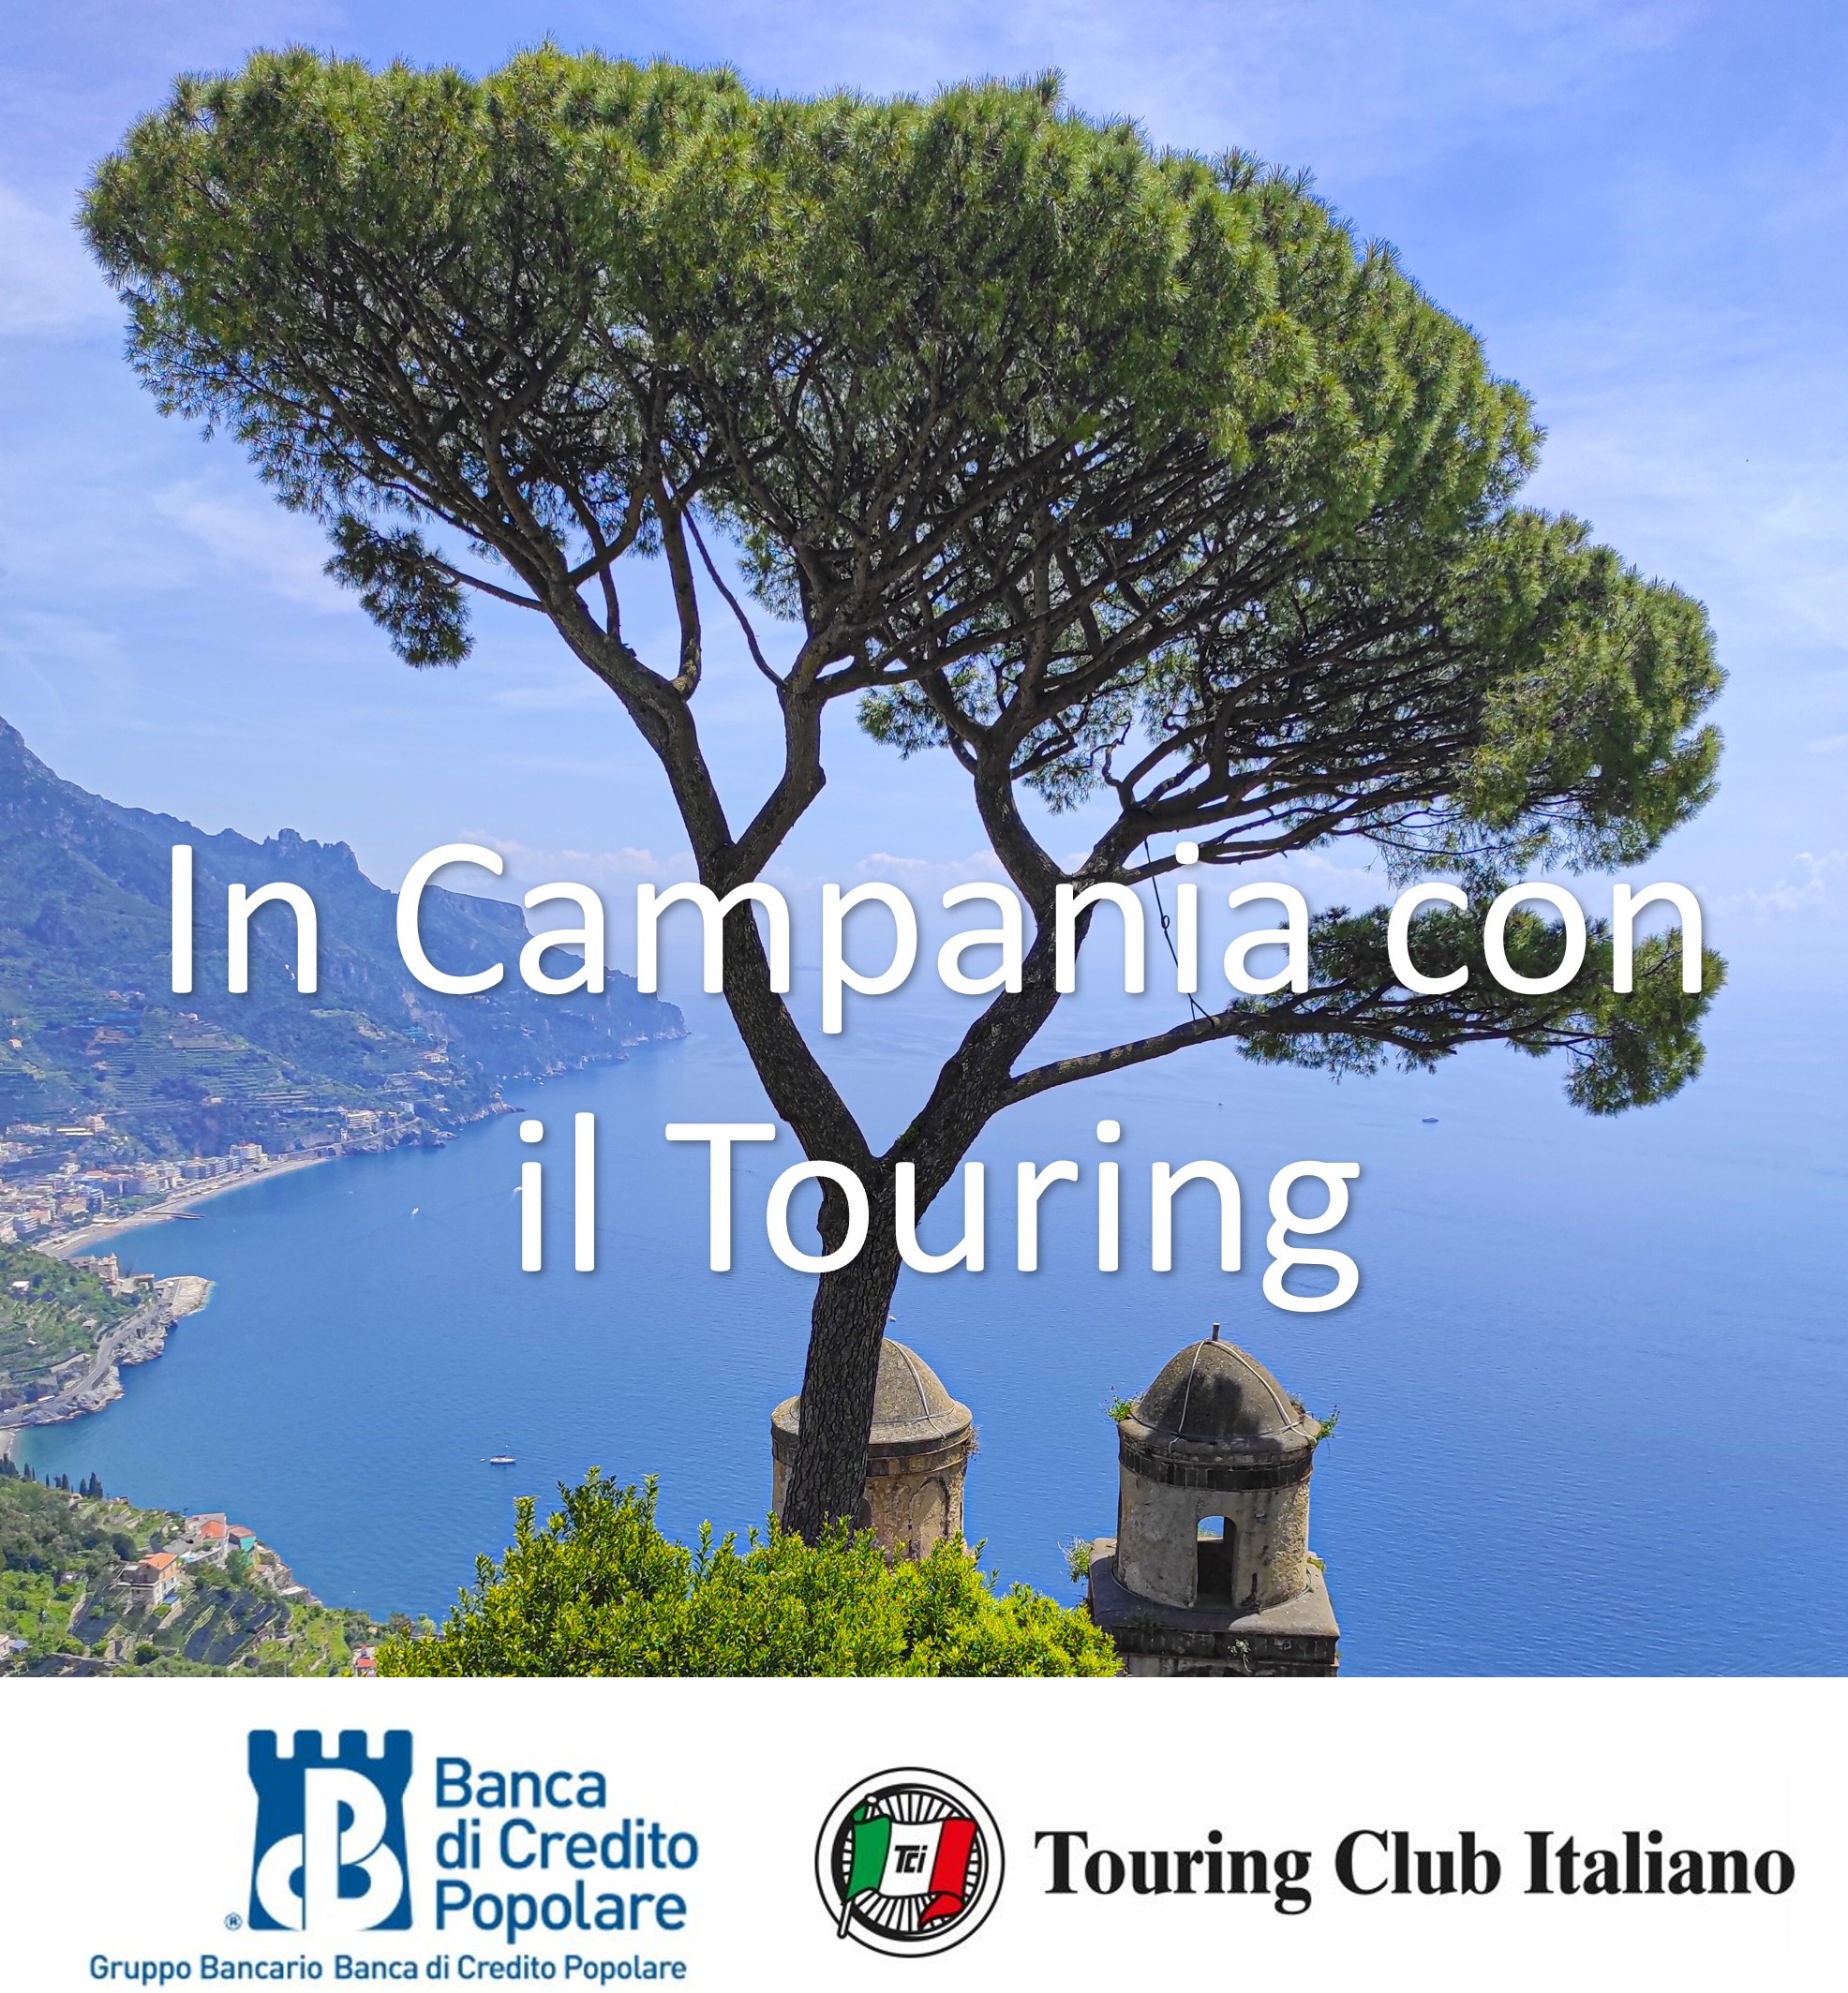 Con il Touring Club Italiano vogliamo far conoscere e apprezzare la nostra regione